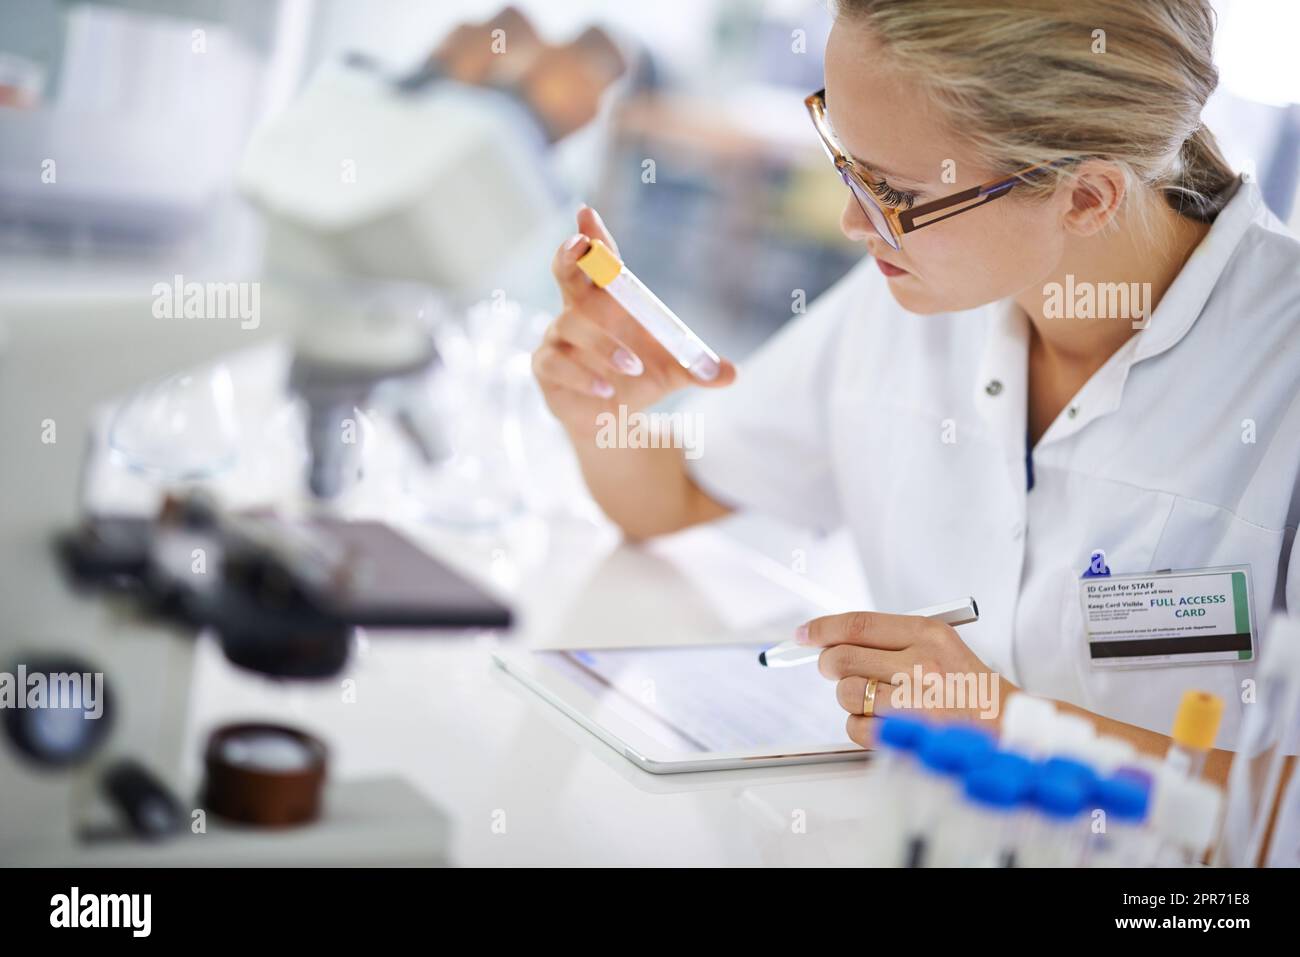 Recherche et développement. Une jeune scientifique enregistre ses conclusions sur une tablette. Banque D'Images